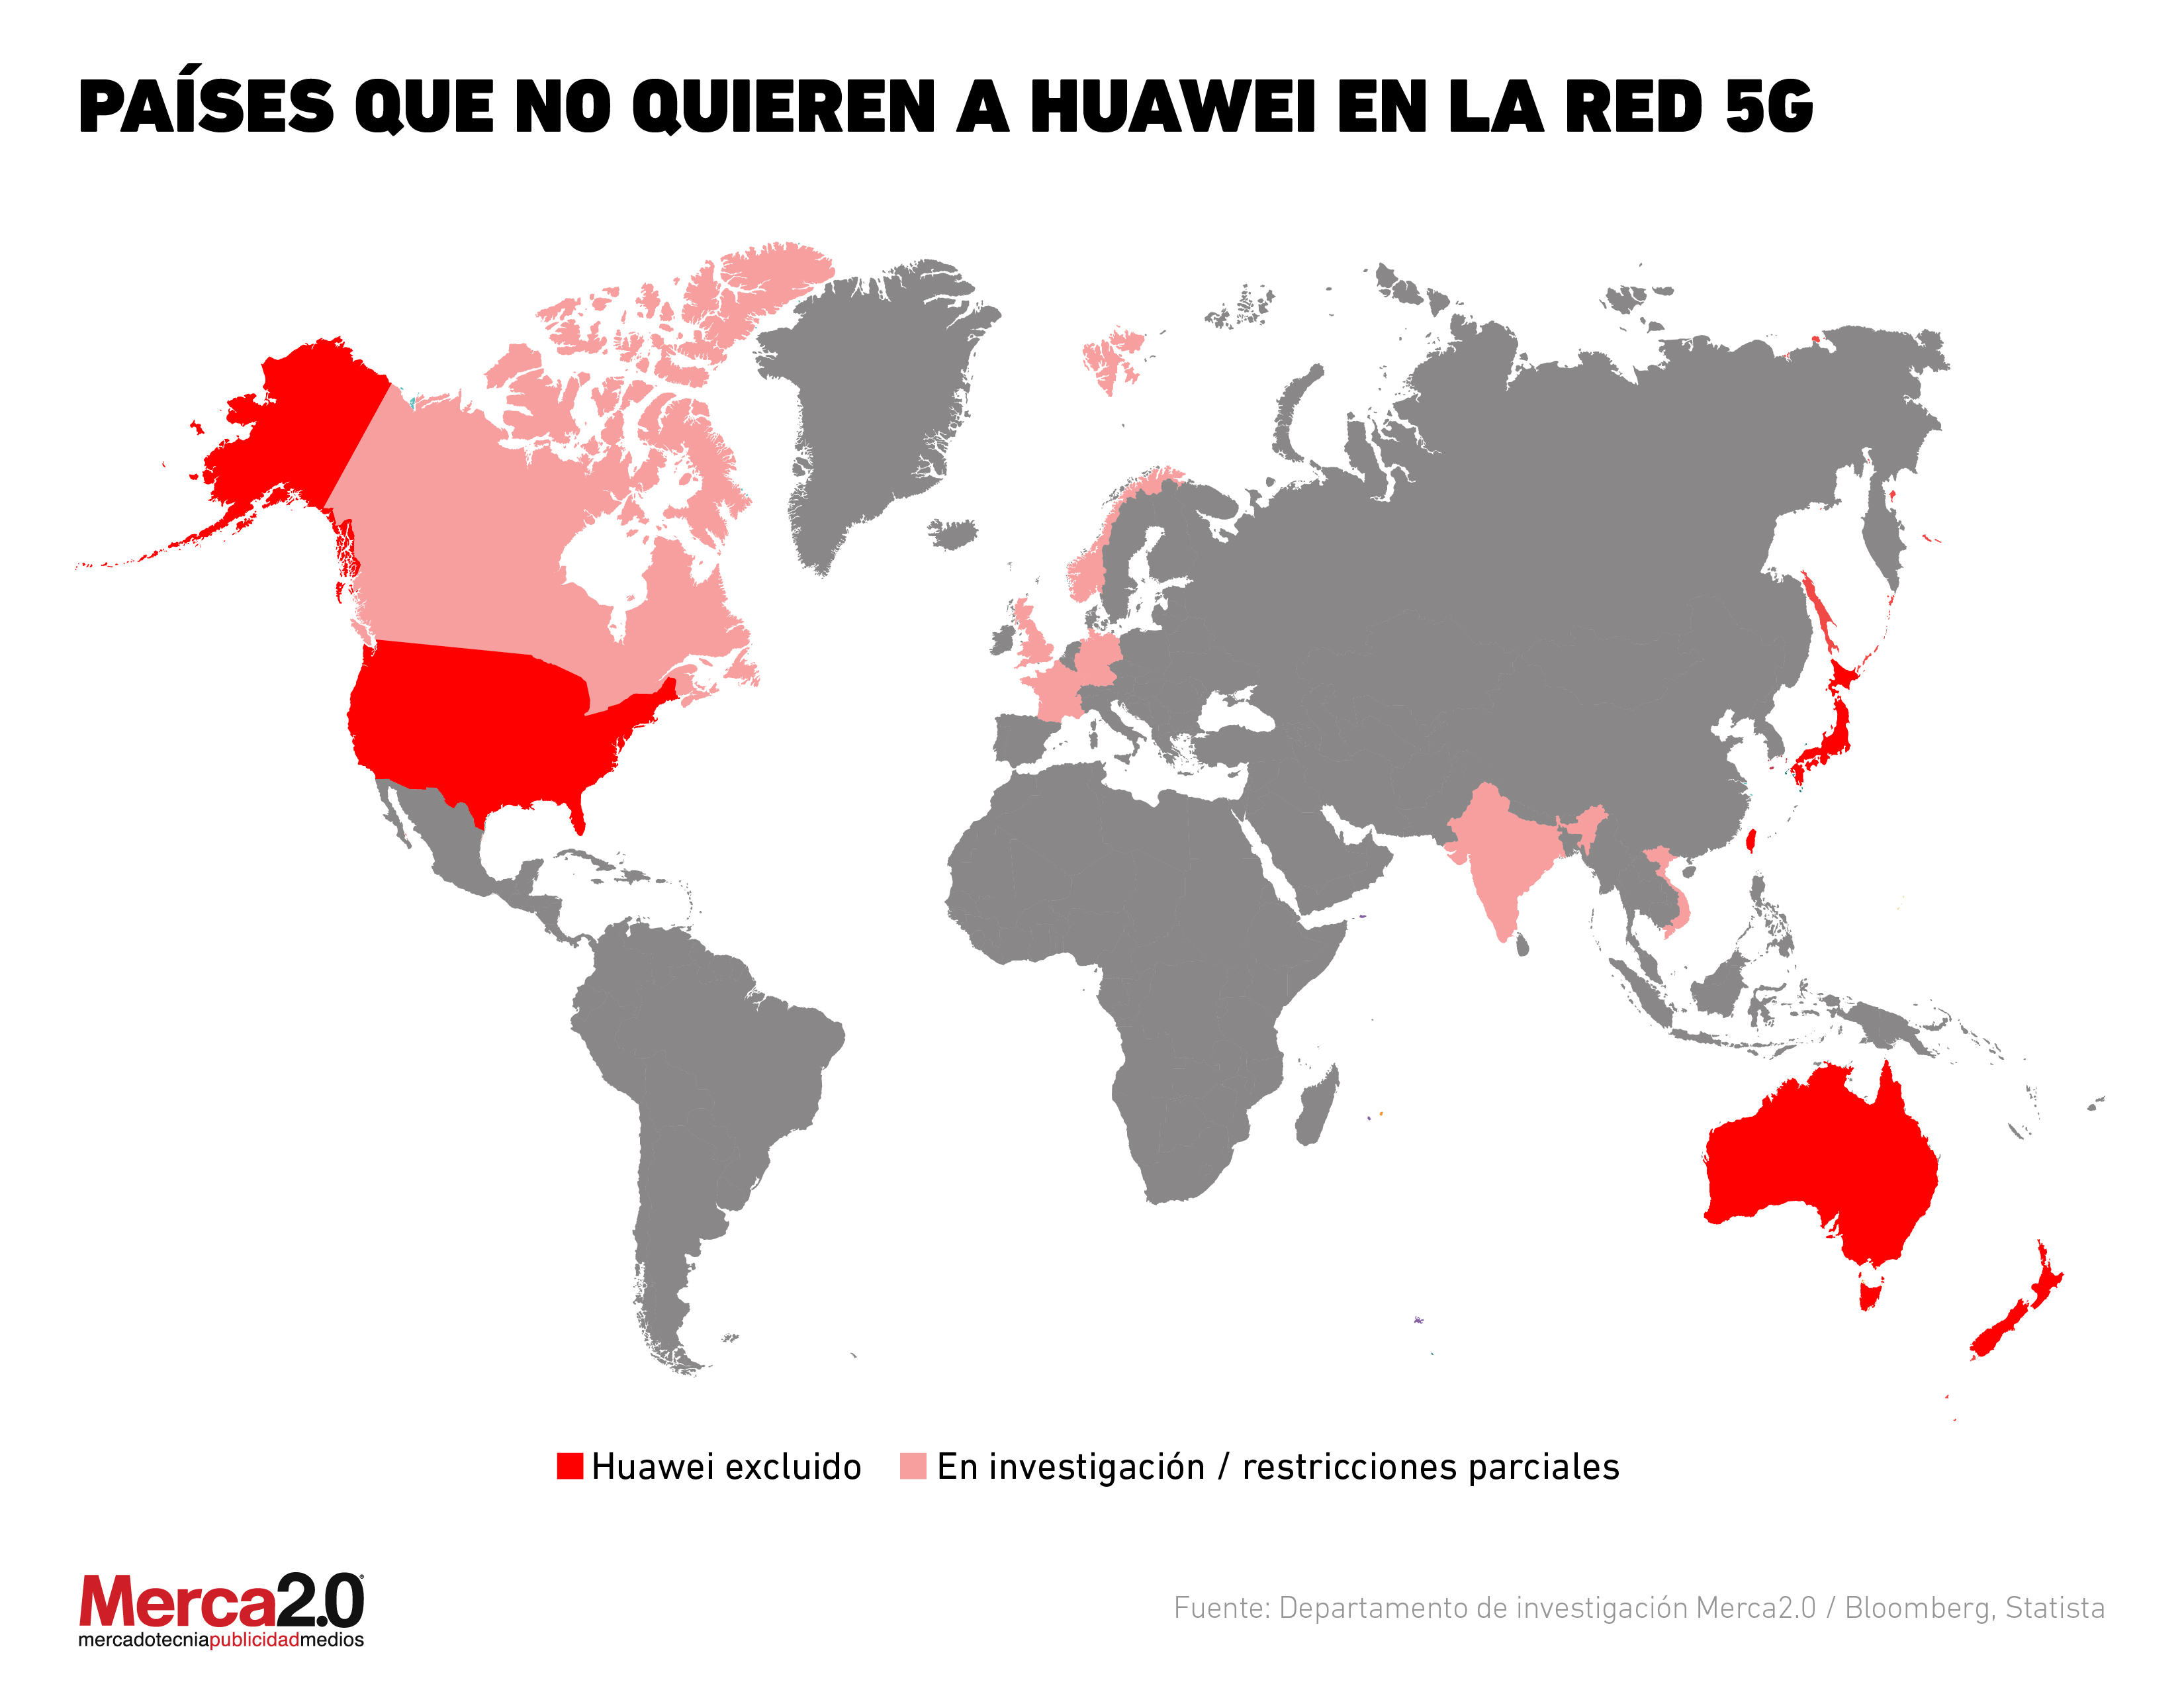 Las naciones que rechazan a Huawei 